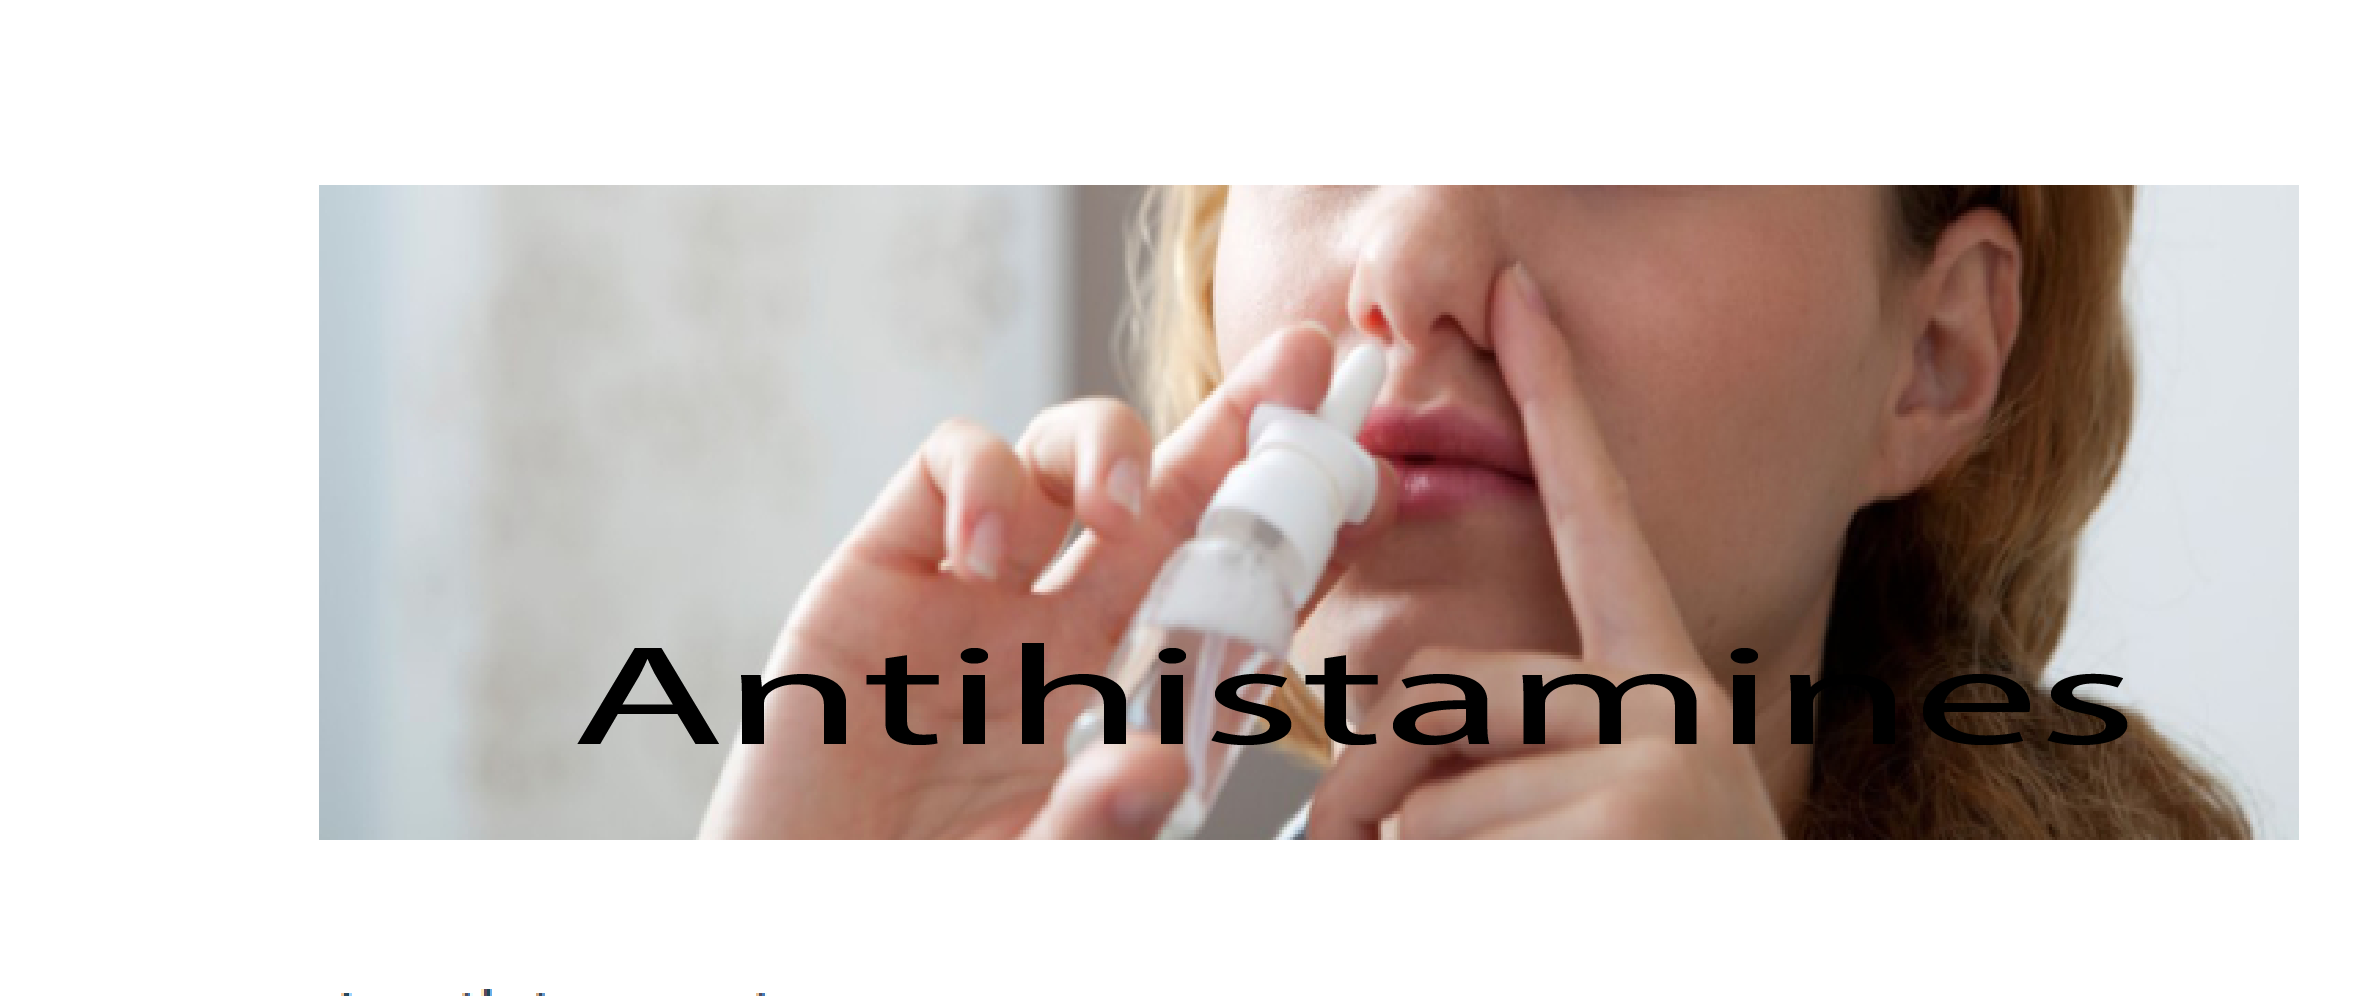 Antihistamines - OnlineinfoSa